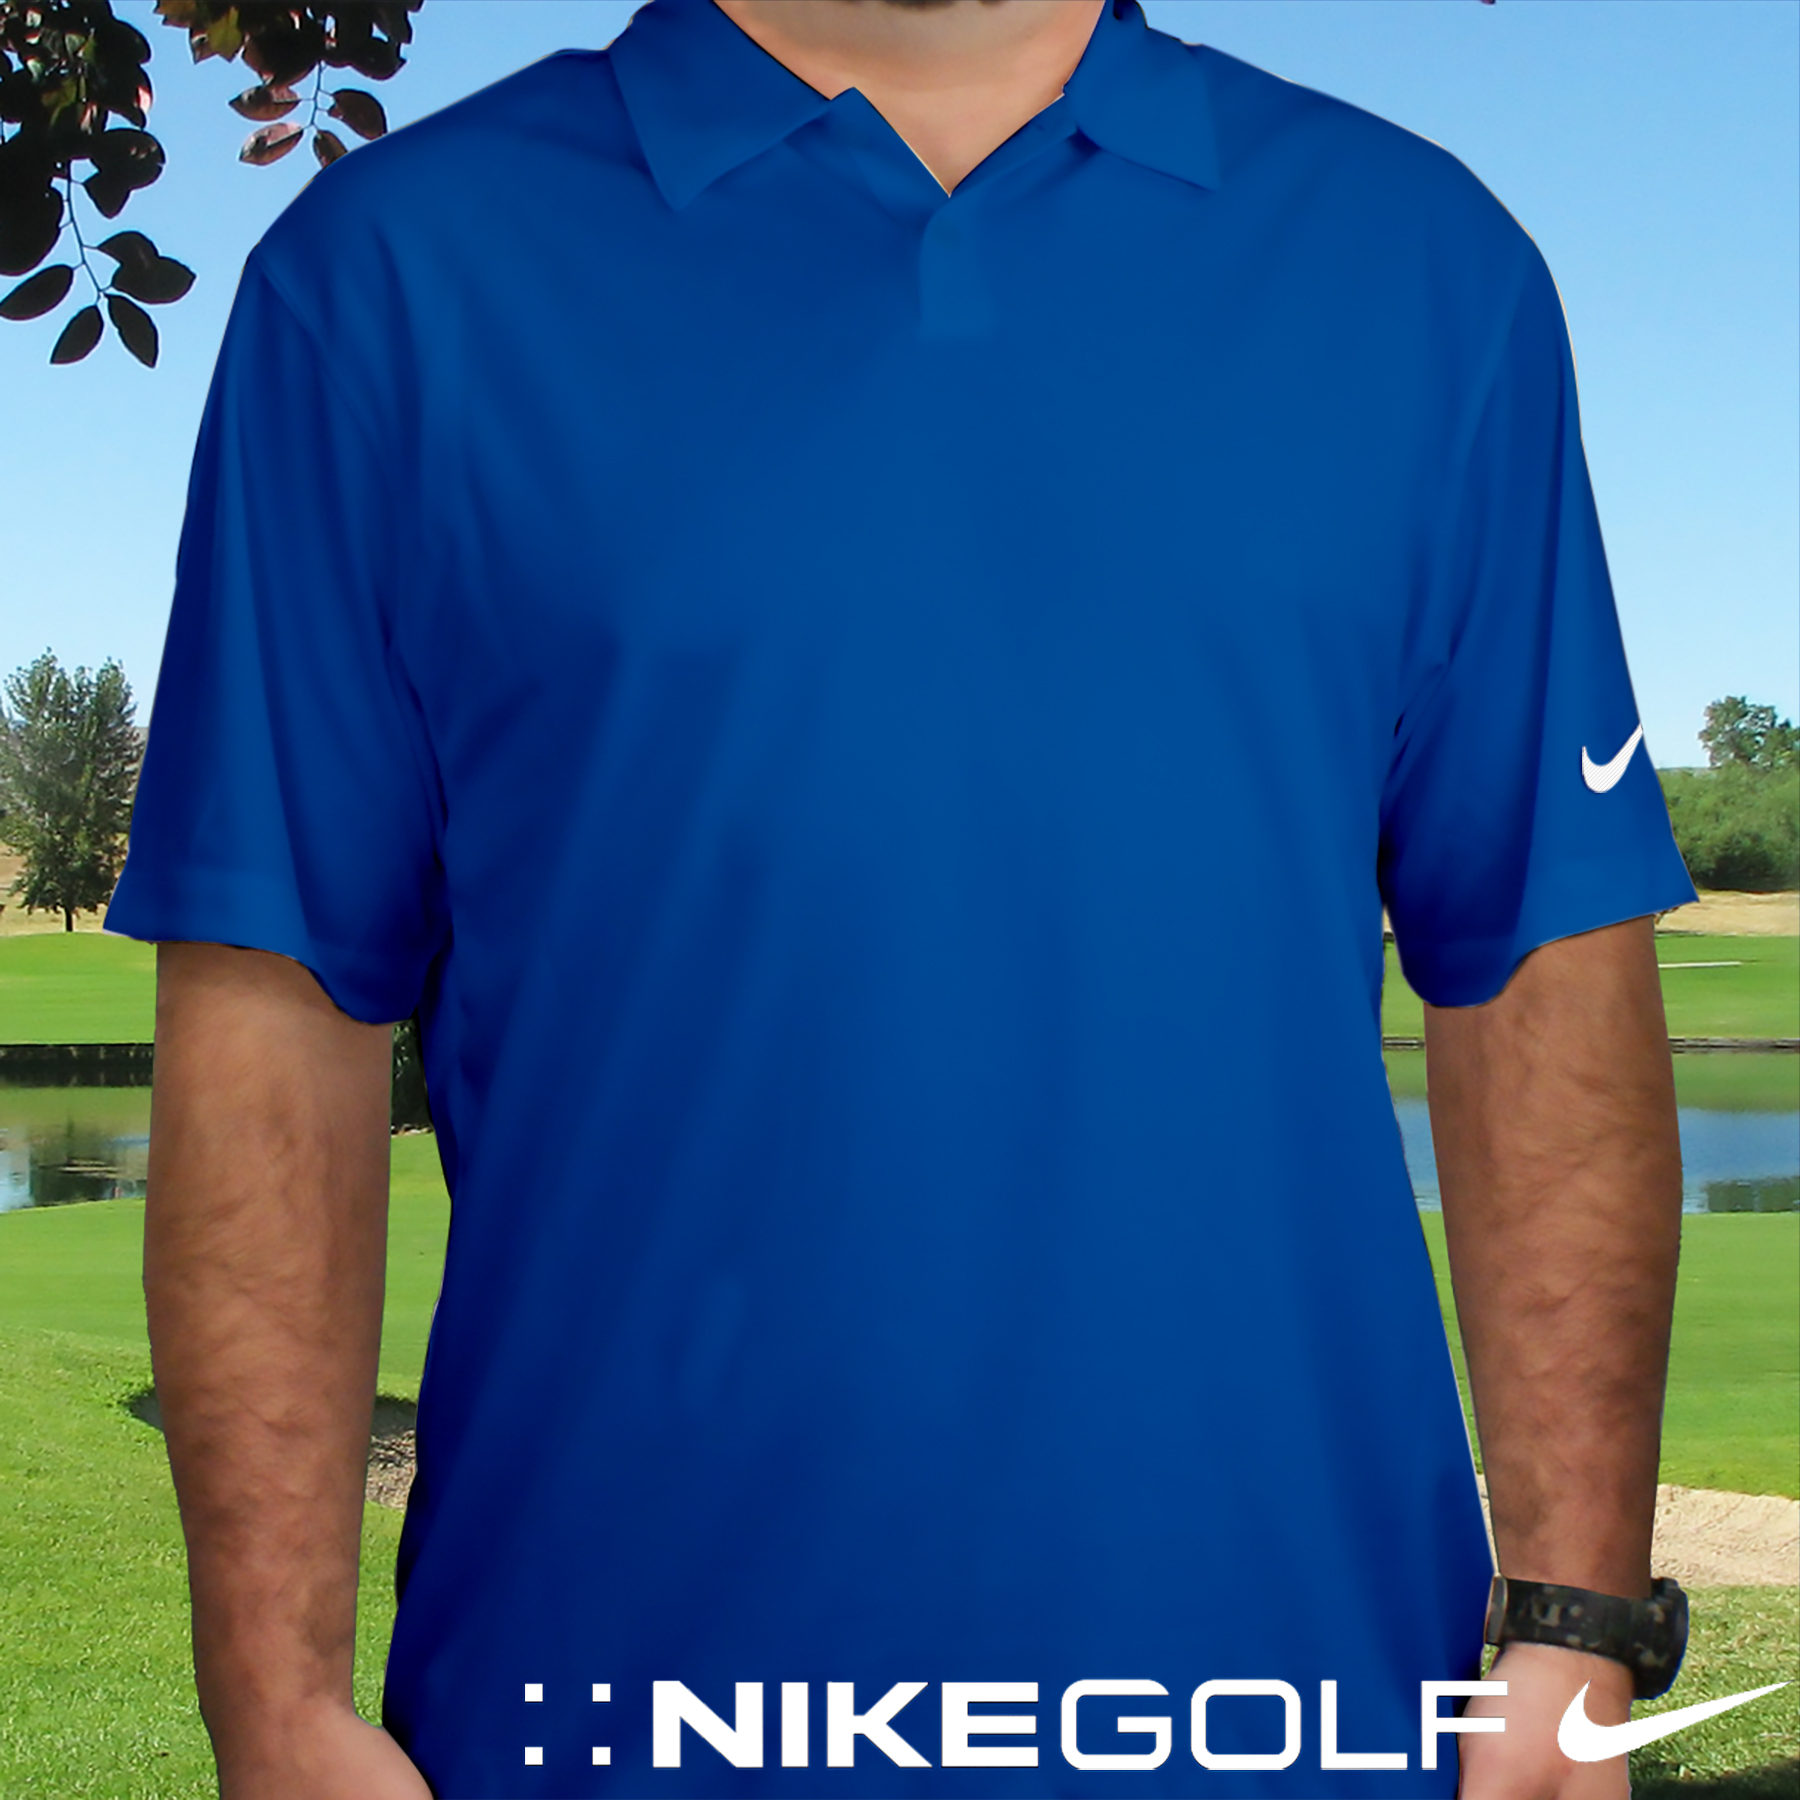 Personalized Nike Dri-Fit Photo Blue Polo Shirt | Personalized Grandpa Gifts